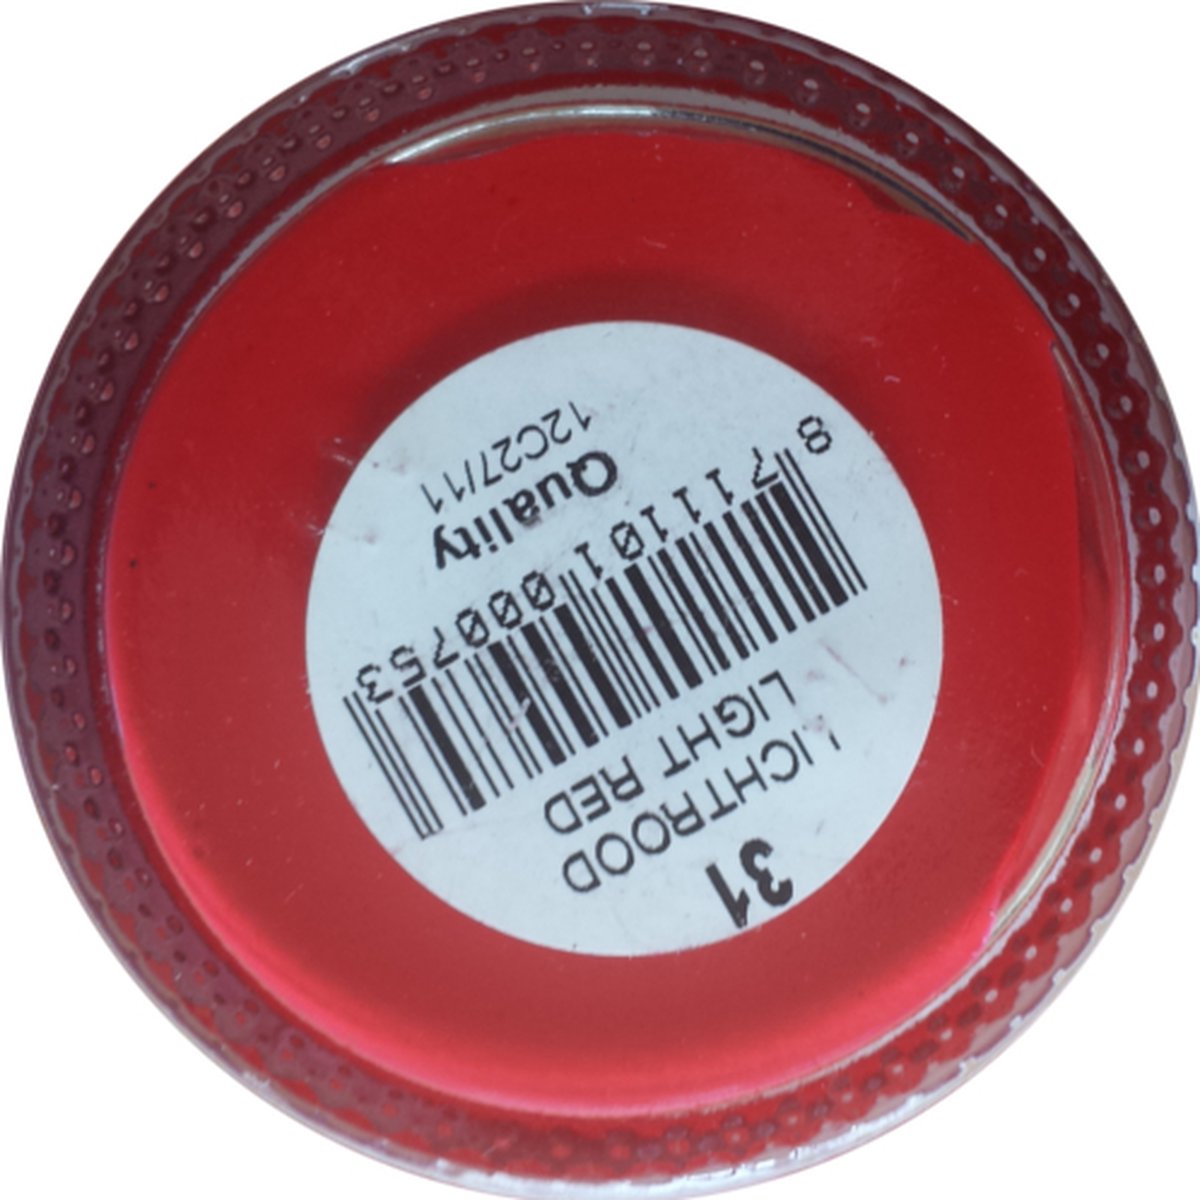 SL - Dekkende Kleurcreme - Licht Rood - (Schoensmeer - Schoenpoets)